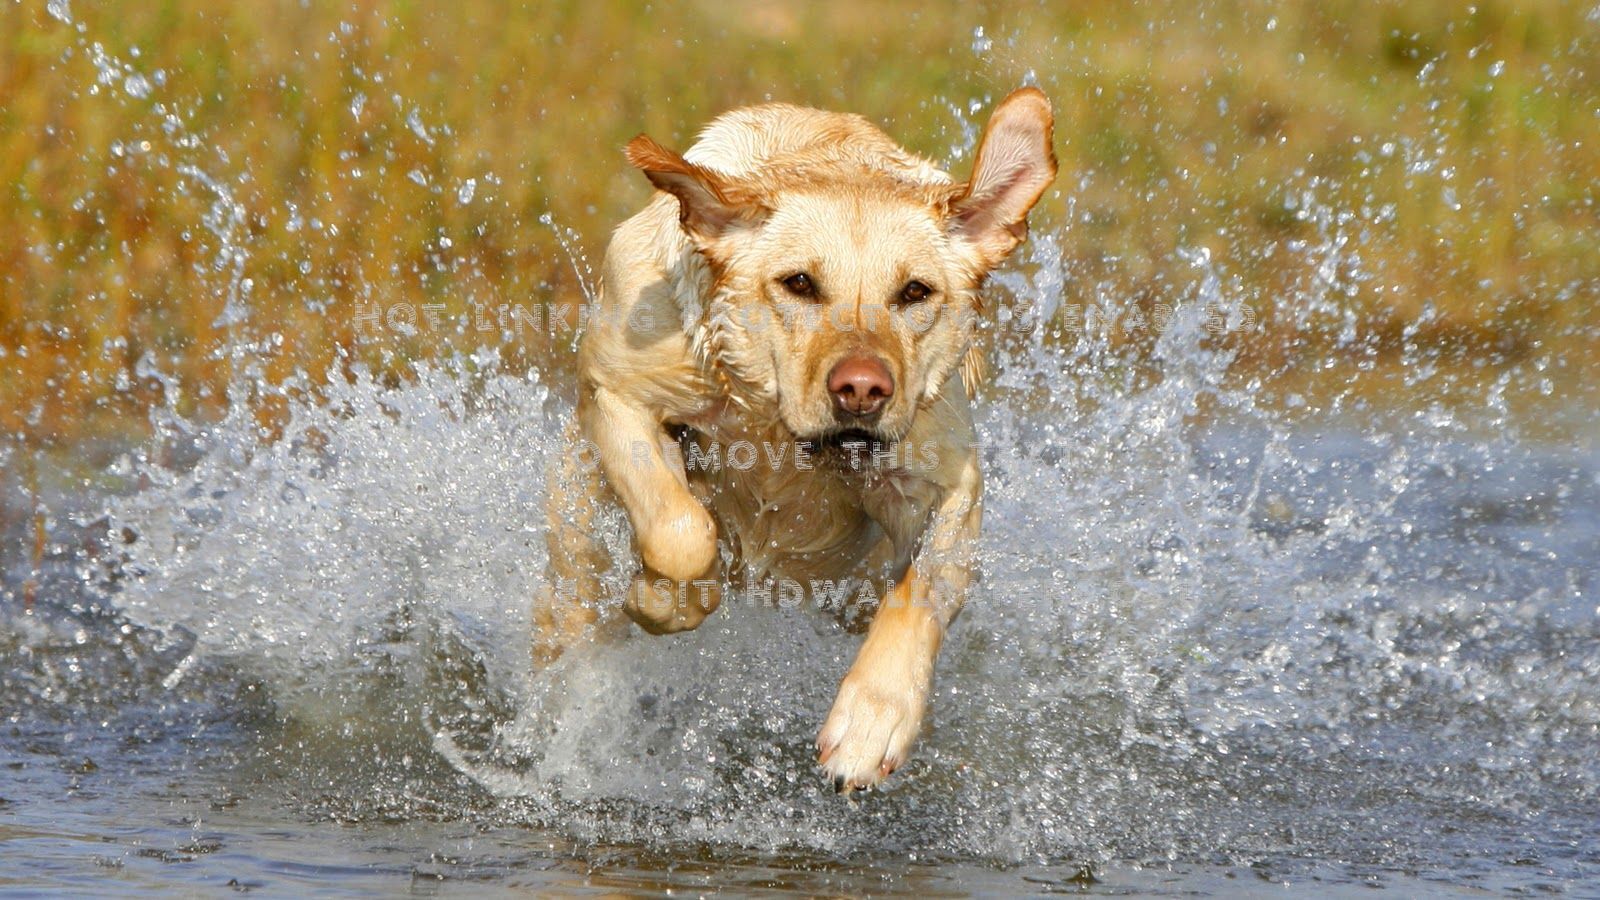 Summer Happiness Retrievers Hd Labrador - Dog Running Through Water - HD Wallpaper 